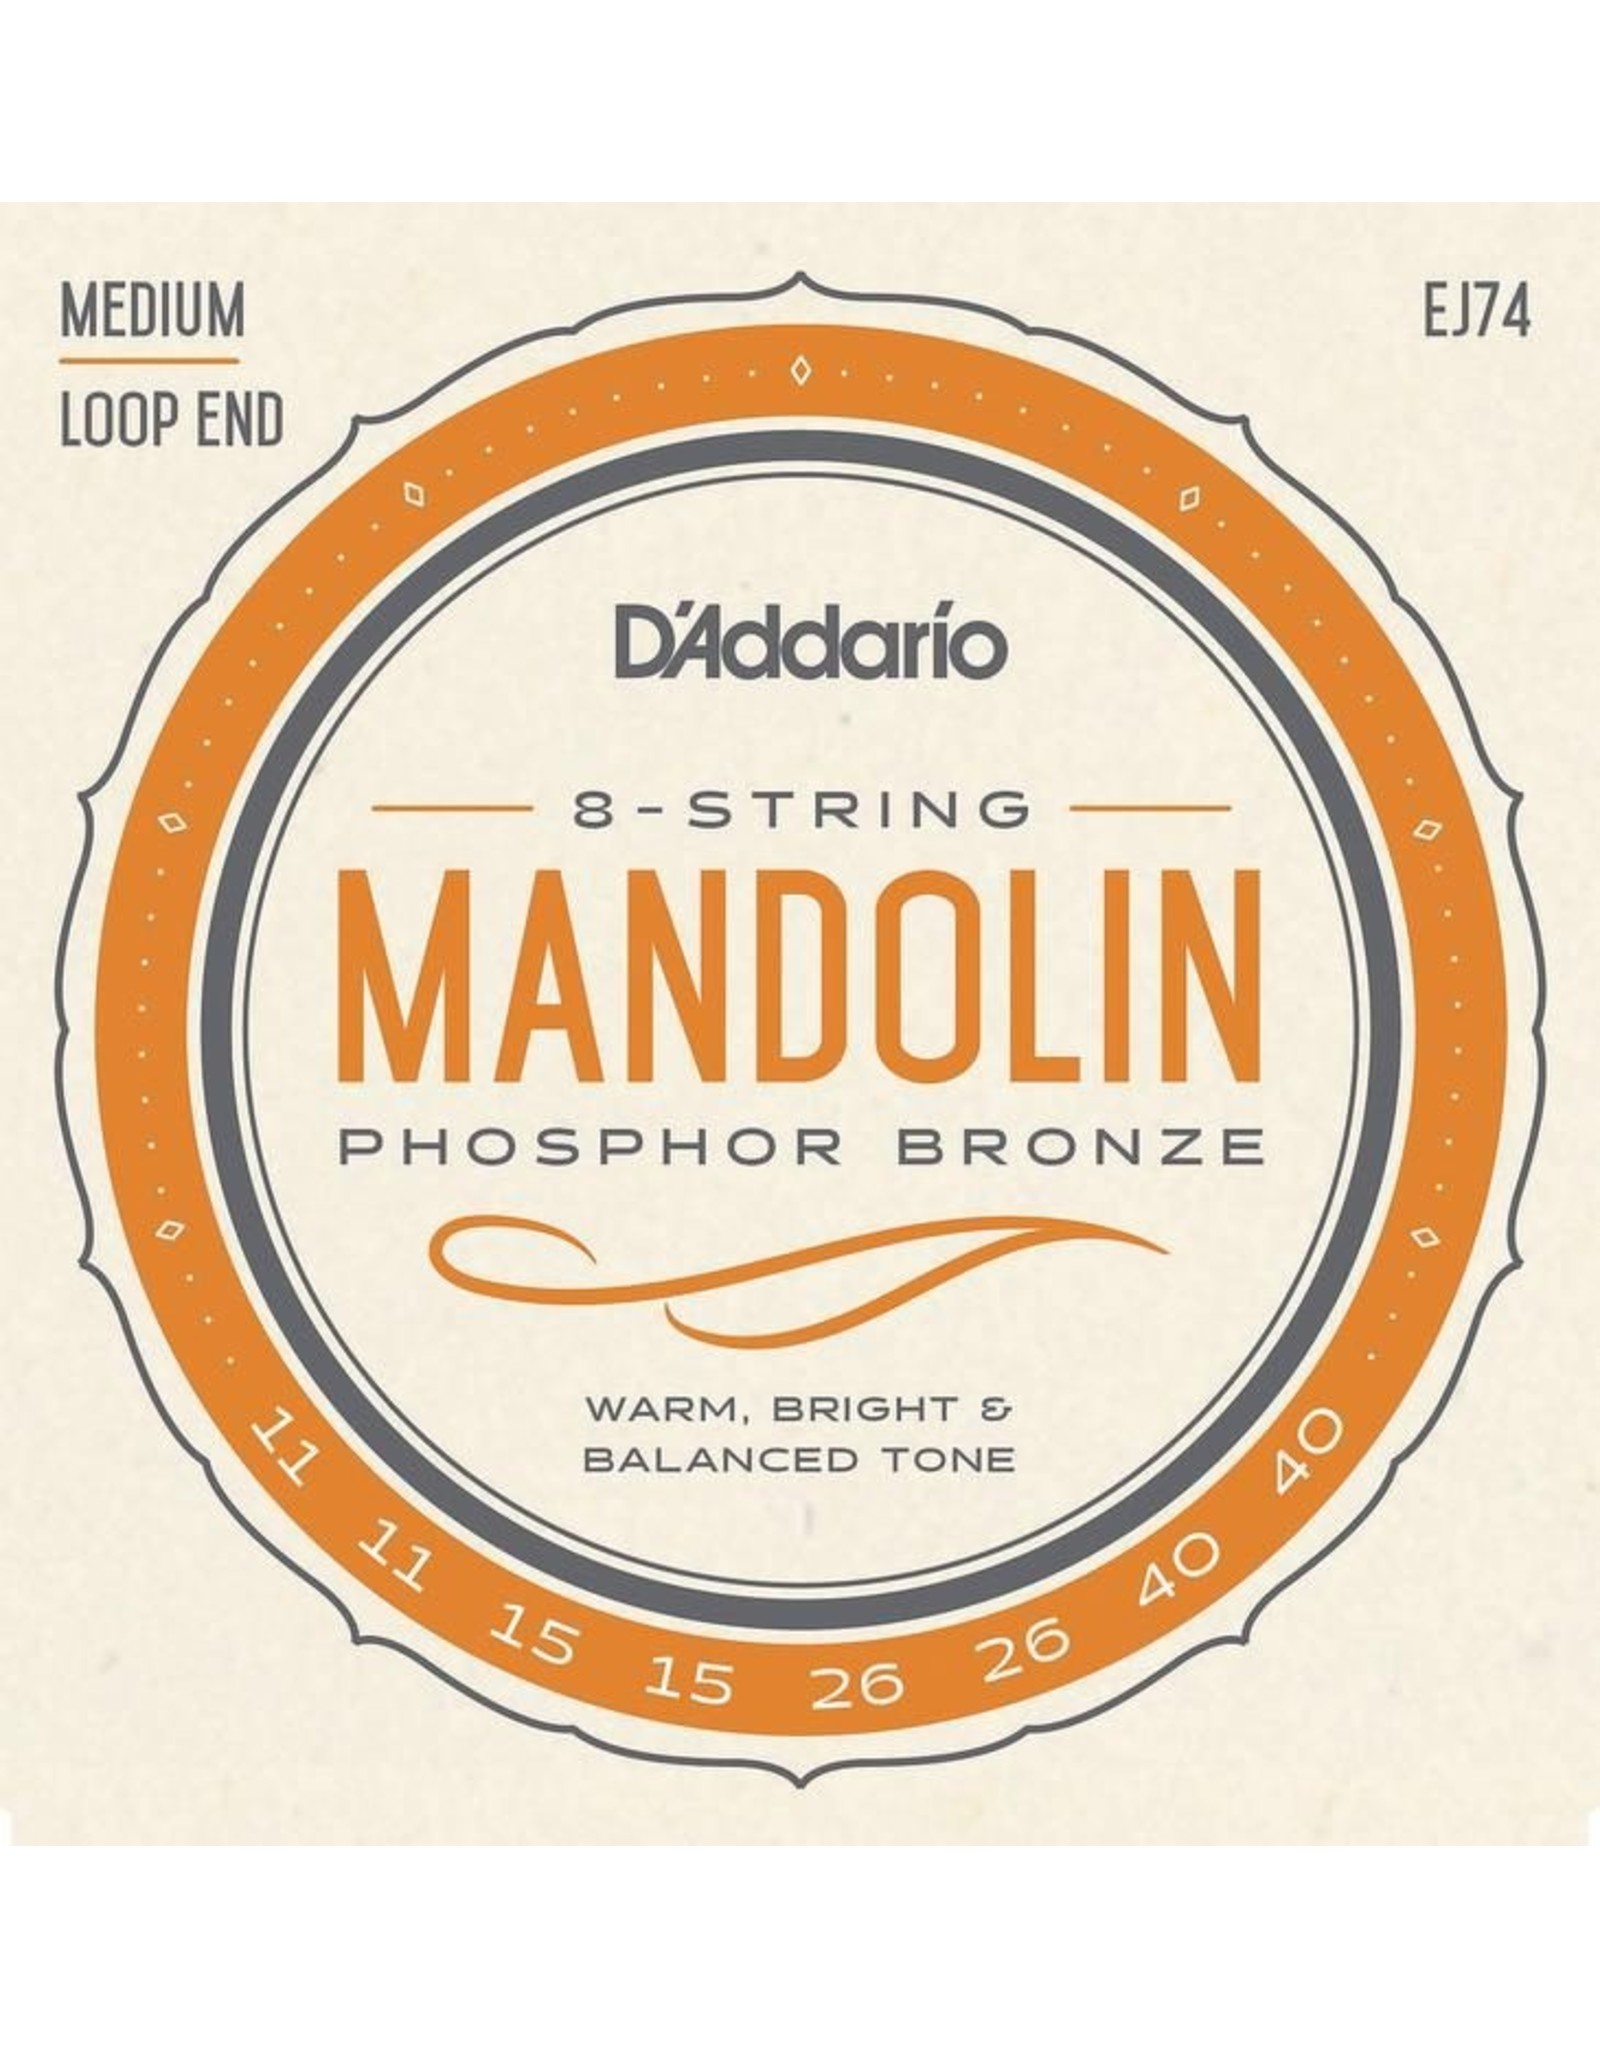 D'Addario D'Addario EJ74 Phosphor Bronze Medium Mandolin strings 11-40